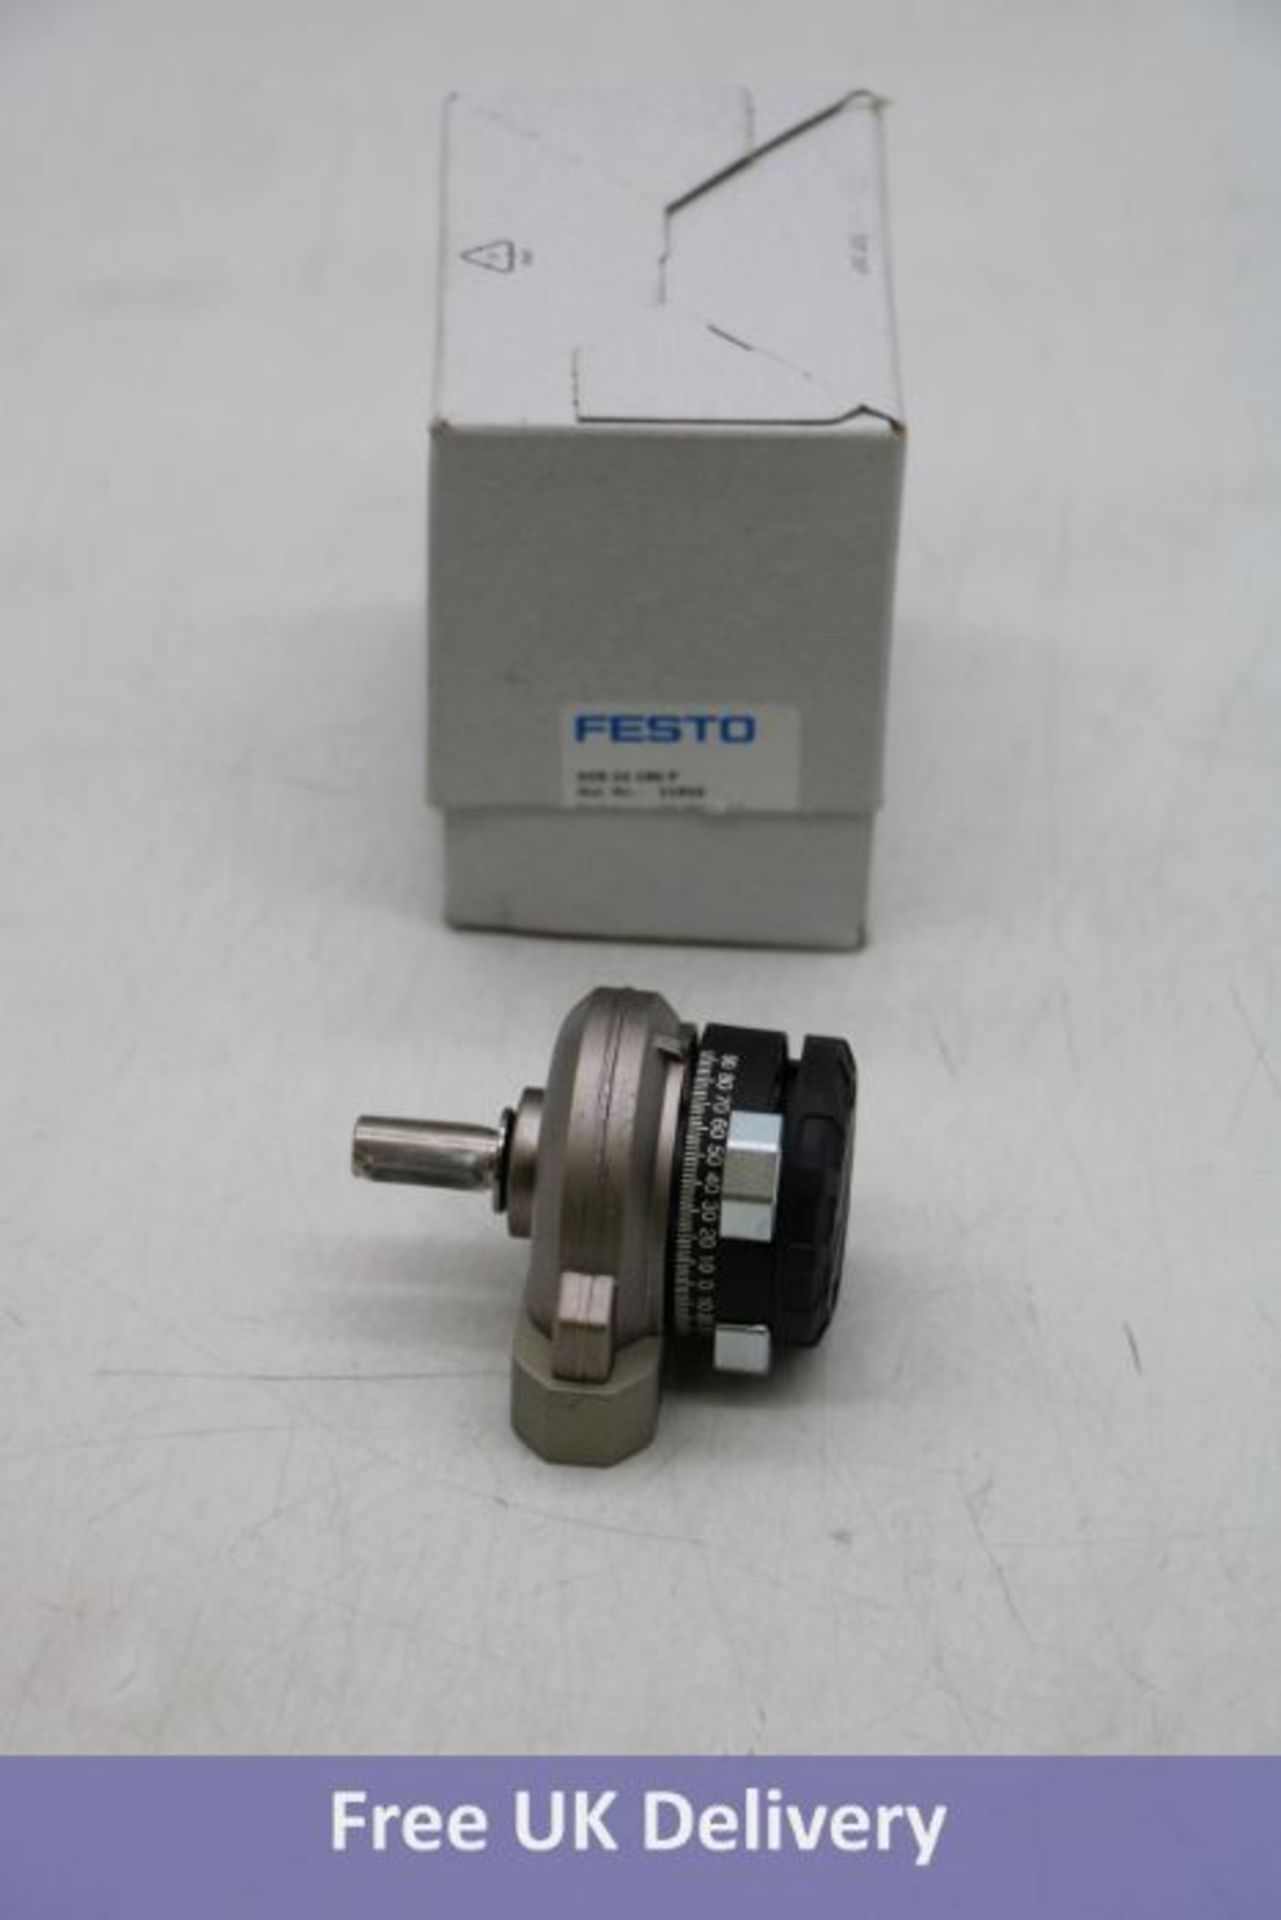 Festo Semi Rotary Drive DSR-16-180-P, Mat No11910